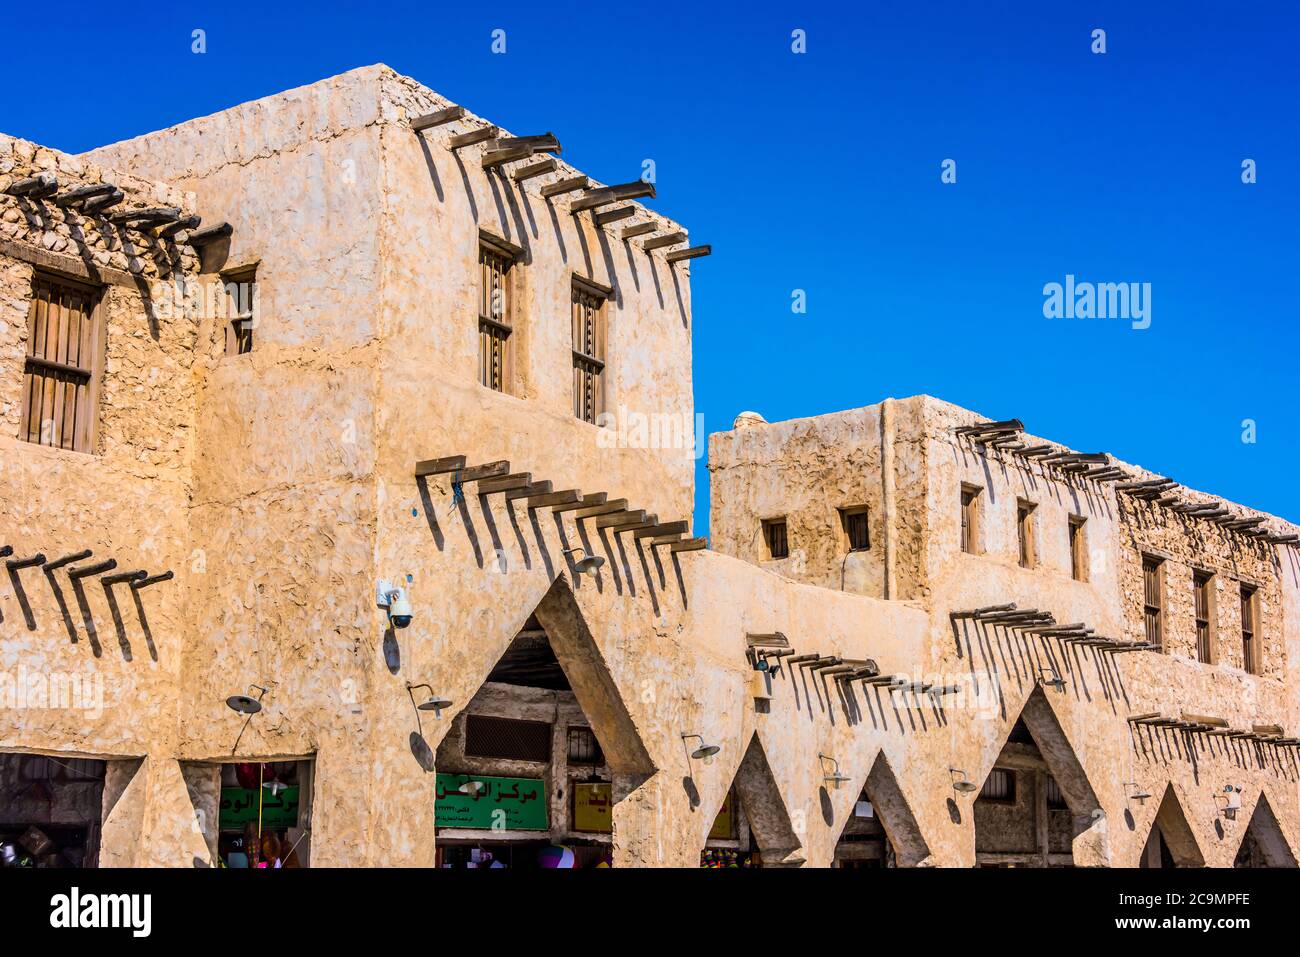 DOHA, KATAR - 27. FEB 2020: Traditionelle Architektur von Souq Waqif, beliebtes Touristenziel in Doha, Katar Stockfoto